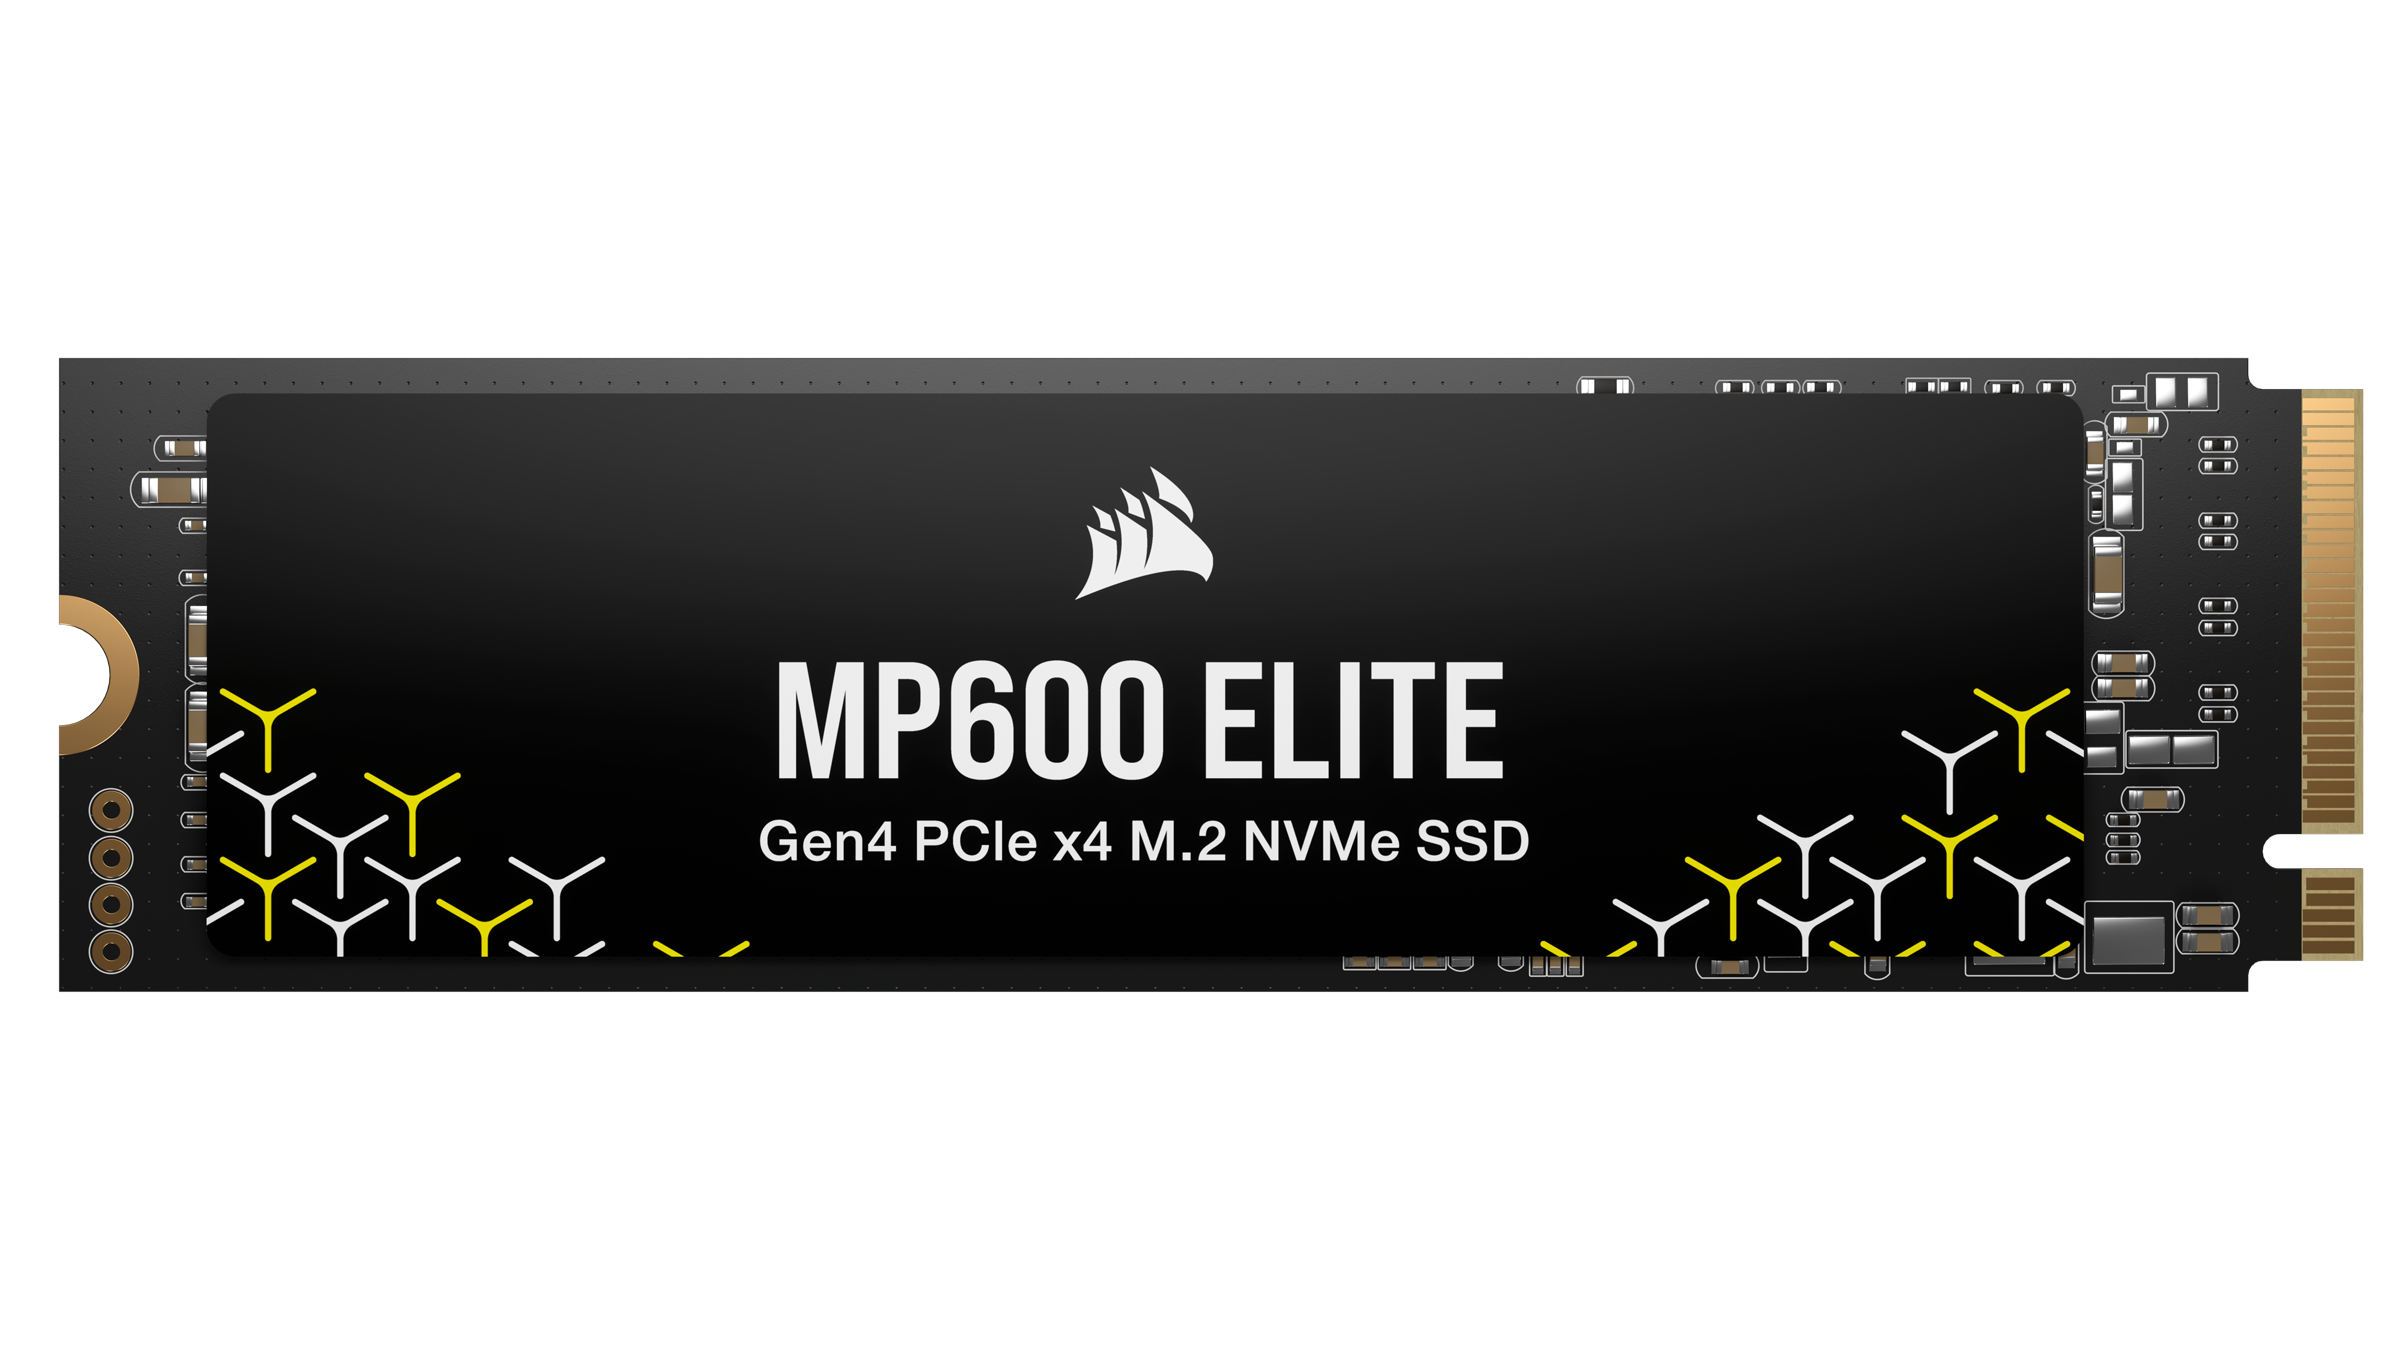 MP600 ELITE 1TB PCIe Gen4 x4 NVMe 1.4 M.2 SSD